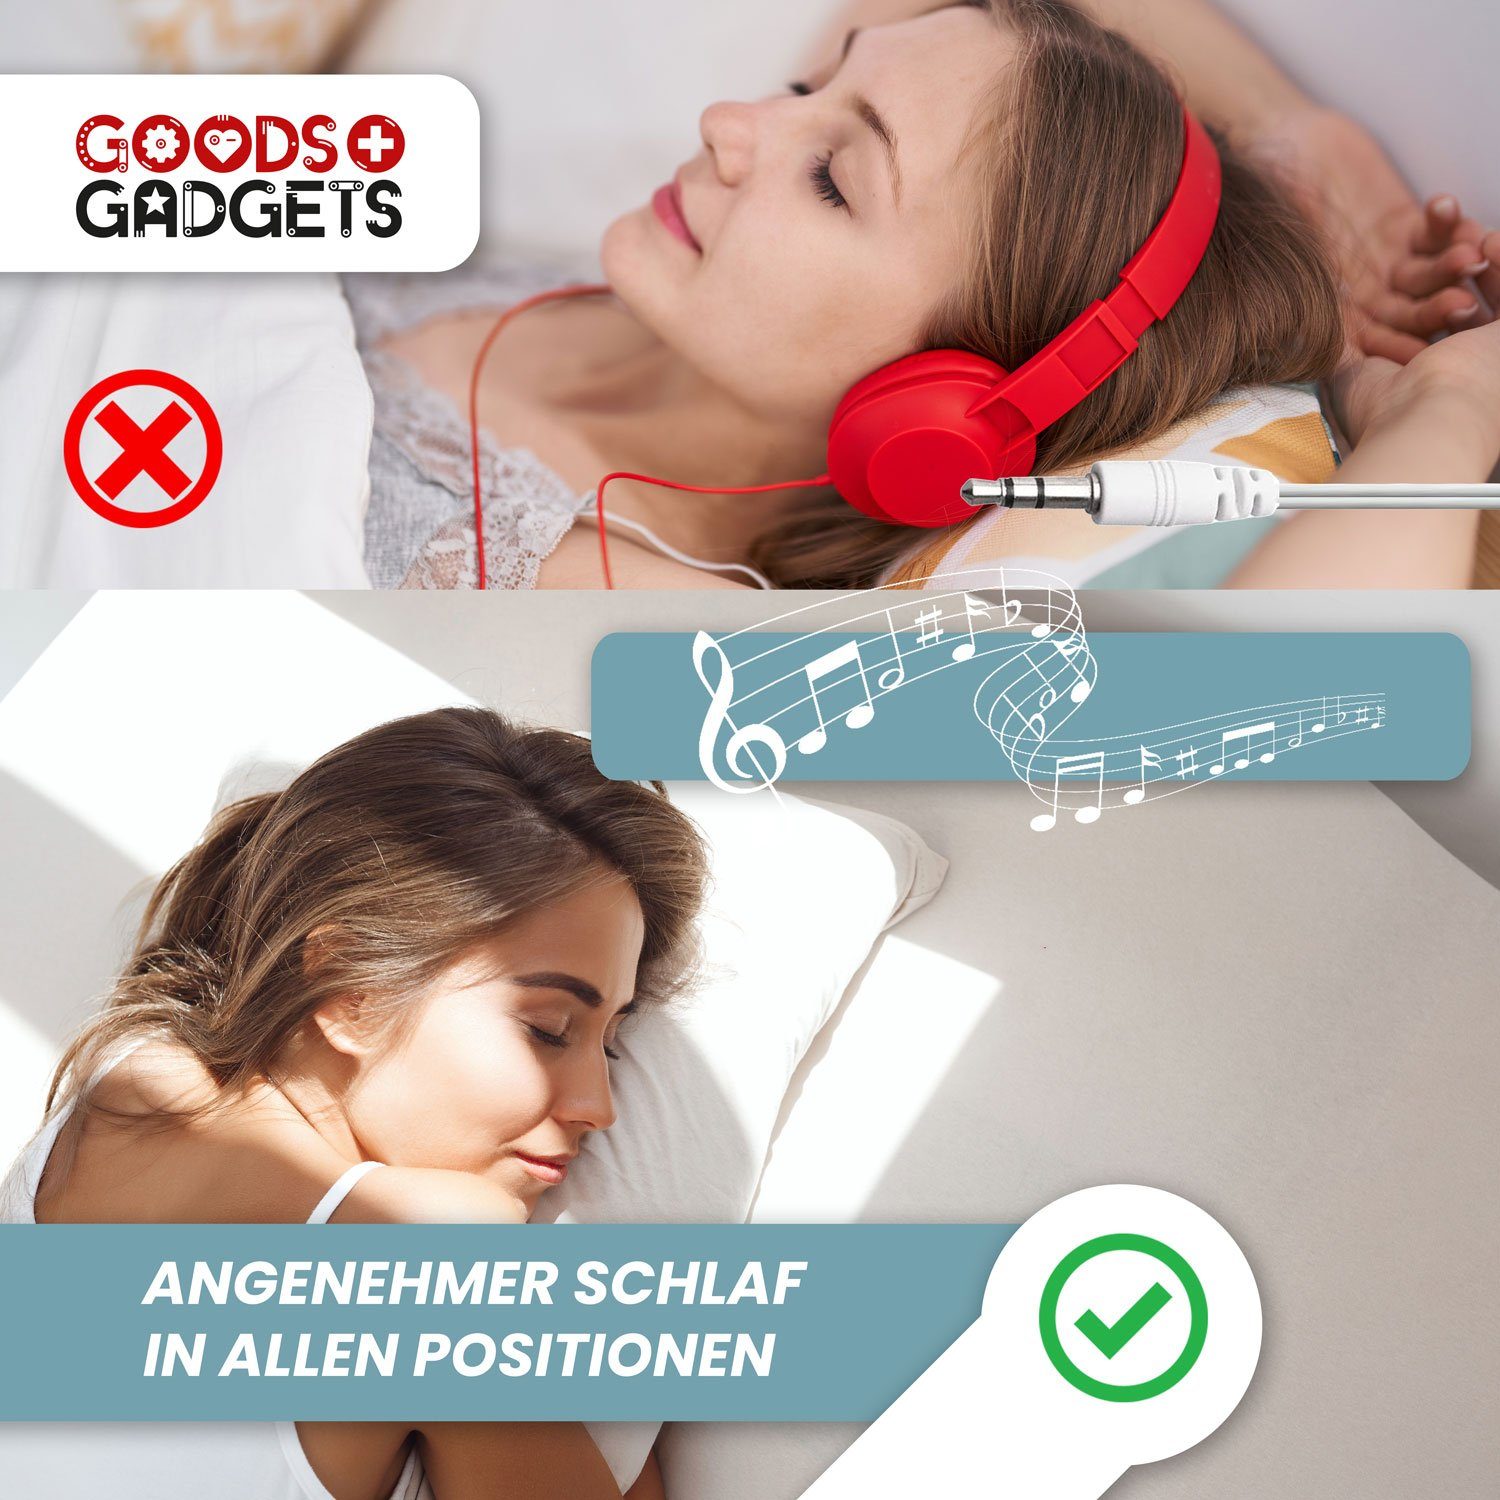 Goods+Gadgets (Kissen-Boxen) Lautsprecher Duo Kopfkissen HiFi-Kopfhörer